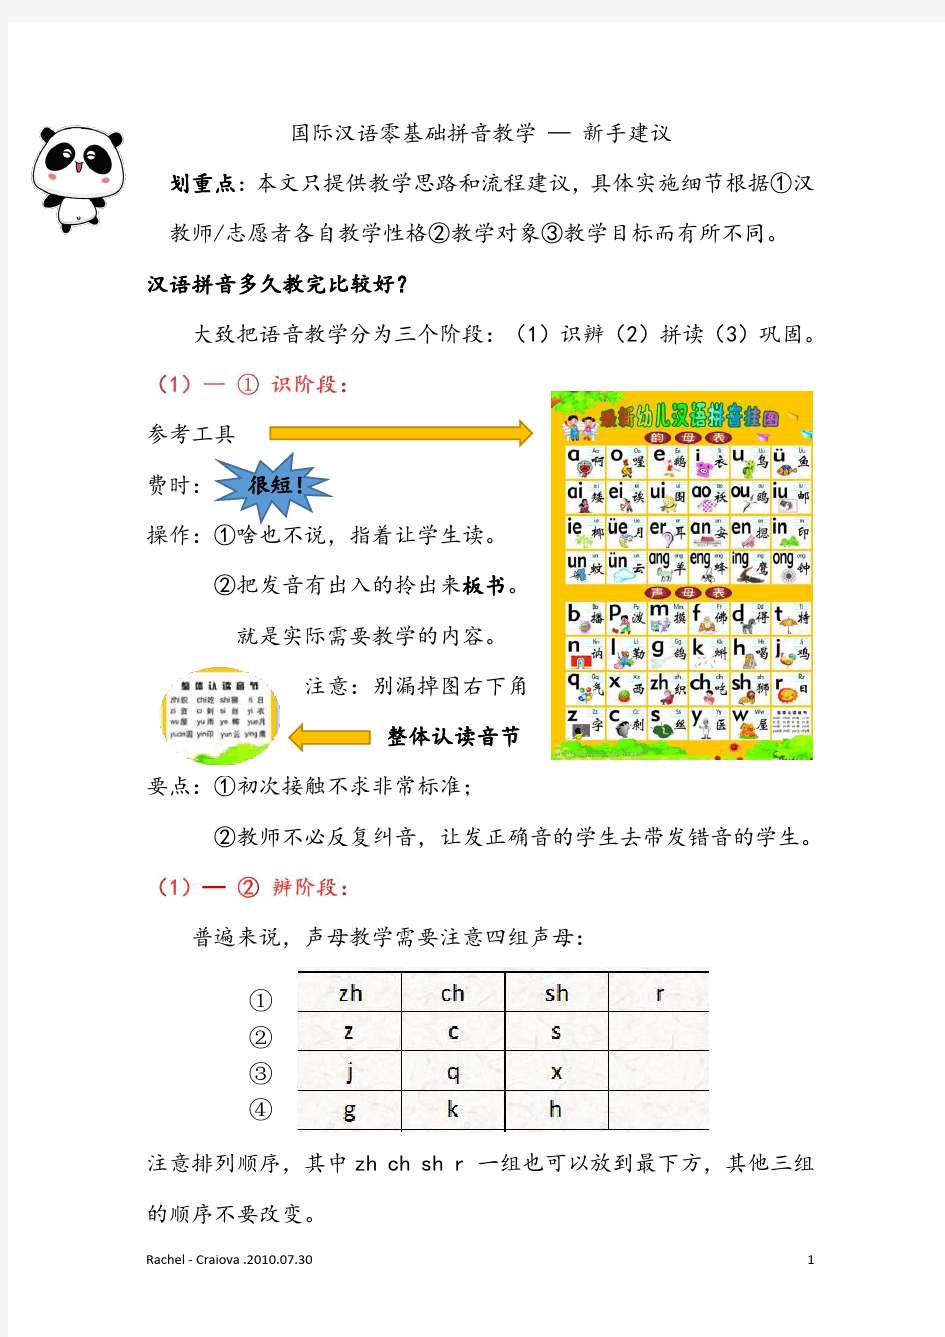 国际汉语零基础拼音教学-新手建议